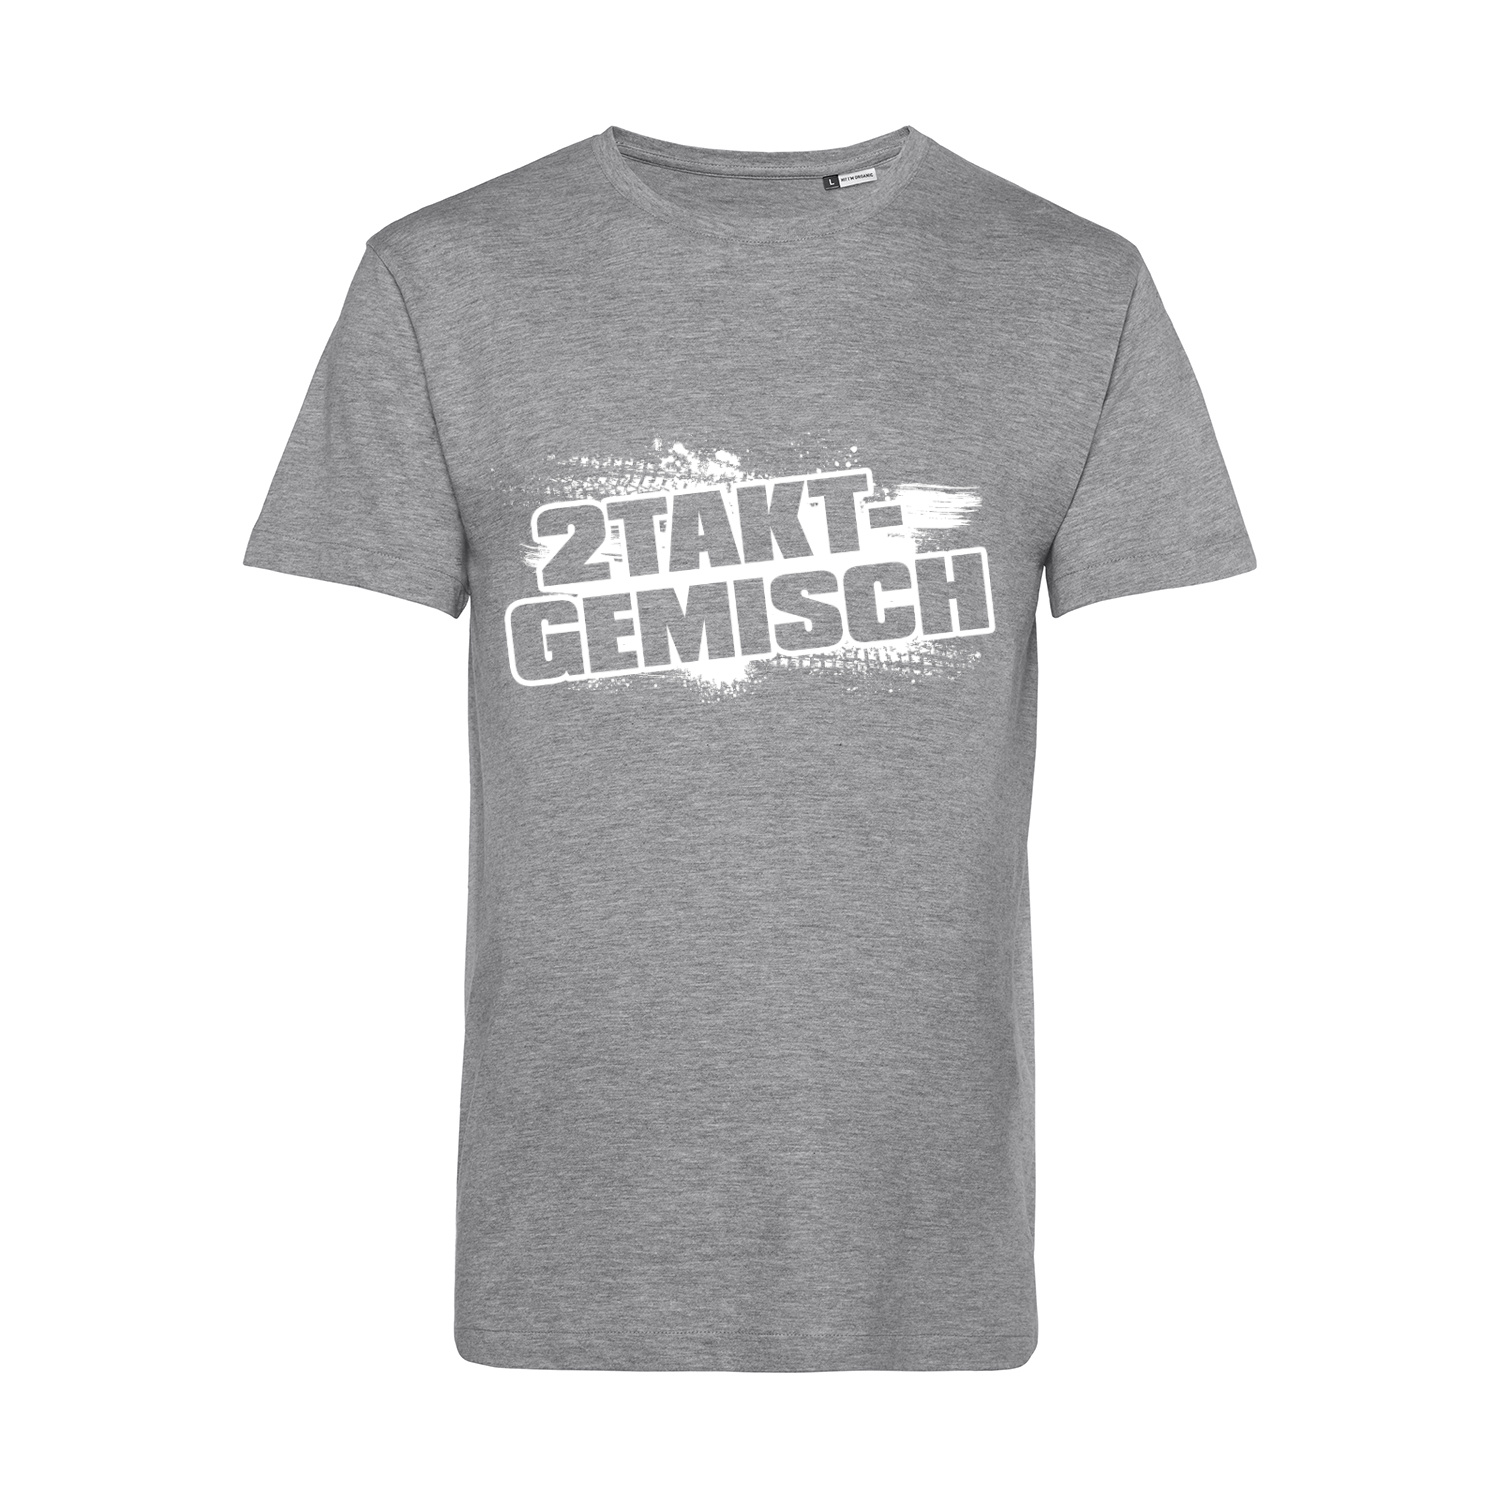 Nachhaltiges T-Shirt Herren 2Takter - Farbspritzer 2Takt-Gemisch